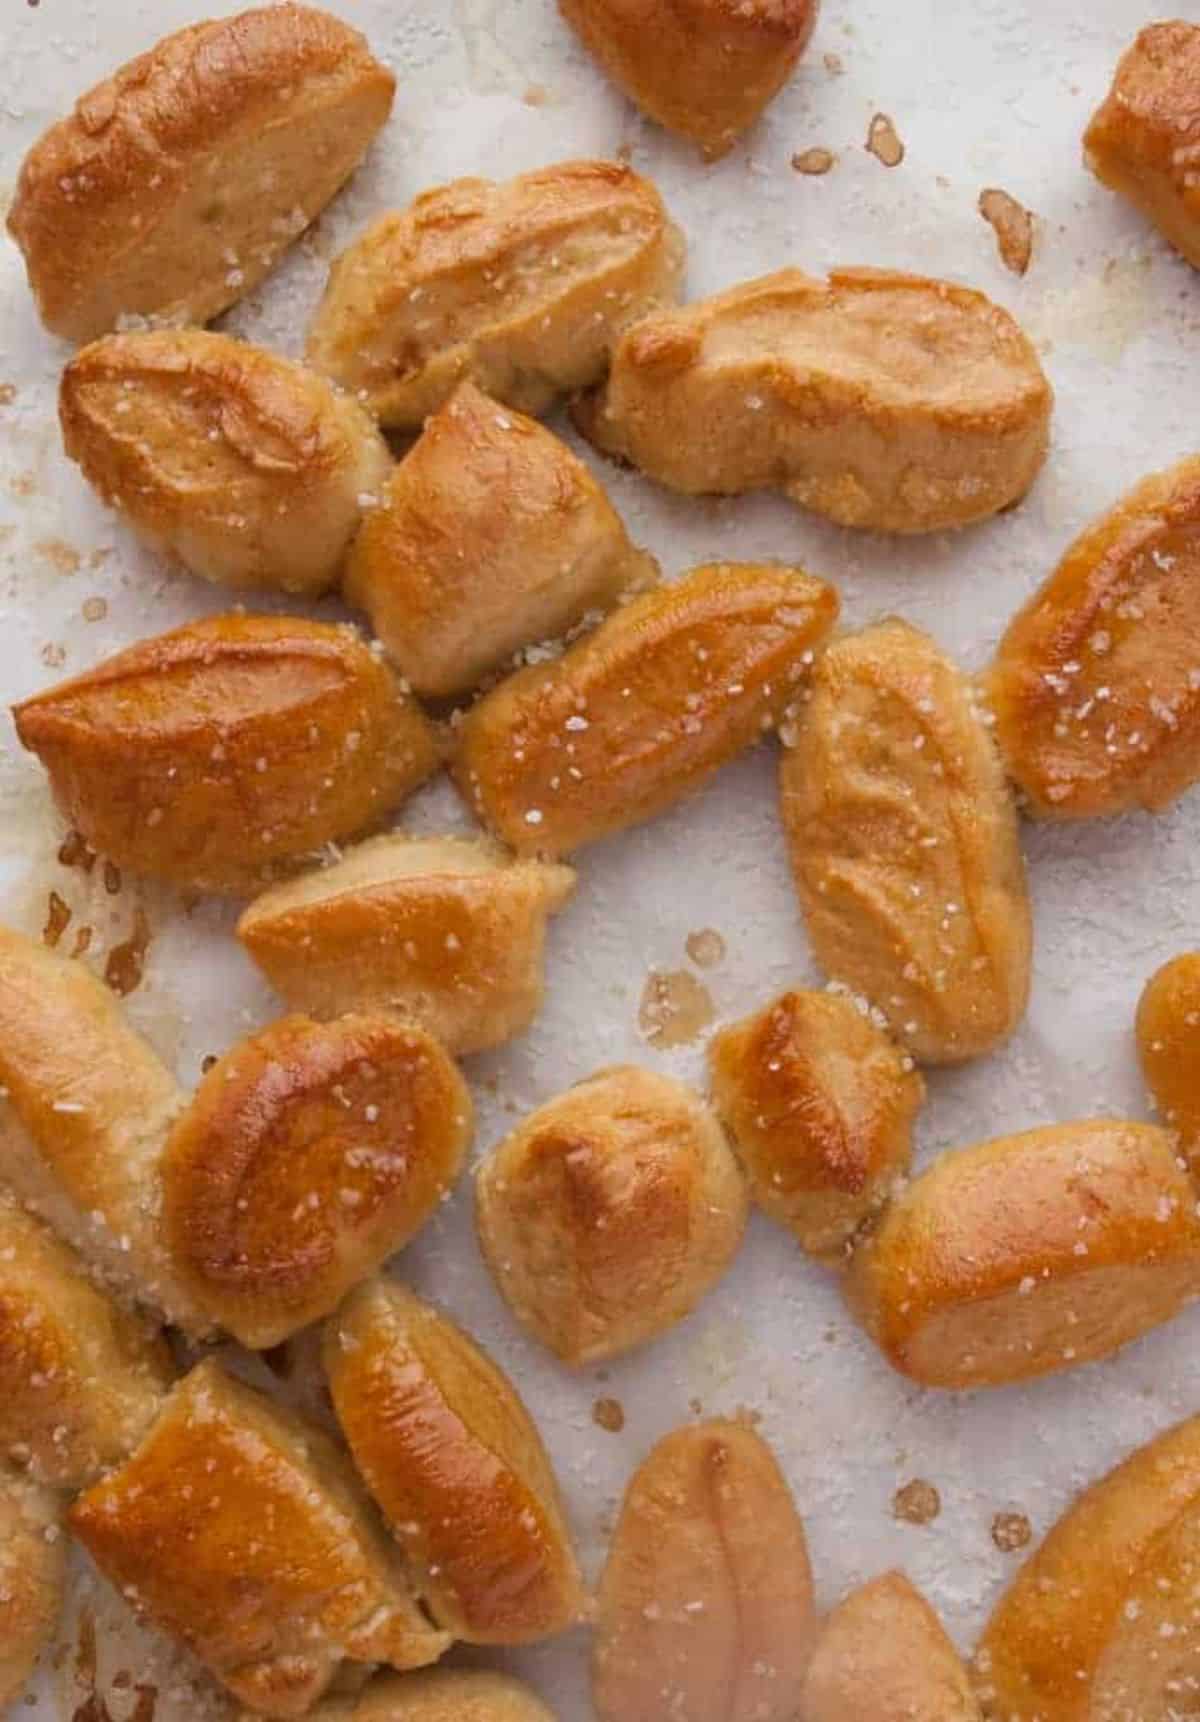 Crunchy Soft Pretzel Bites scattered on a table.